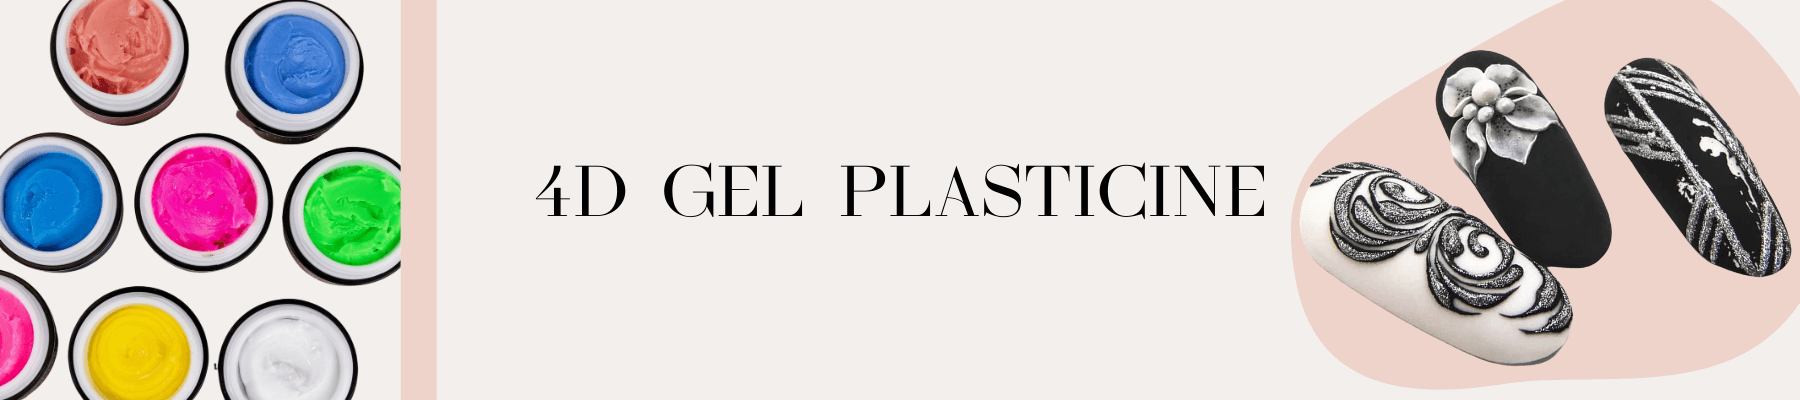 4D Gel Paste, Gel Plasticine, 3D, 4D, Nail Art, Volume